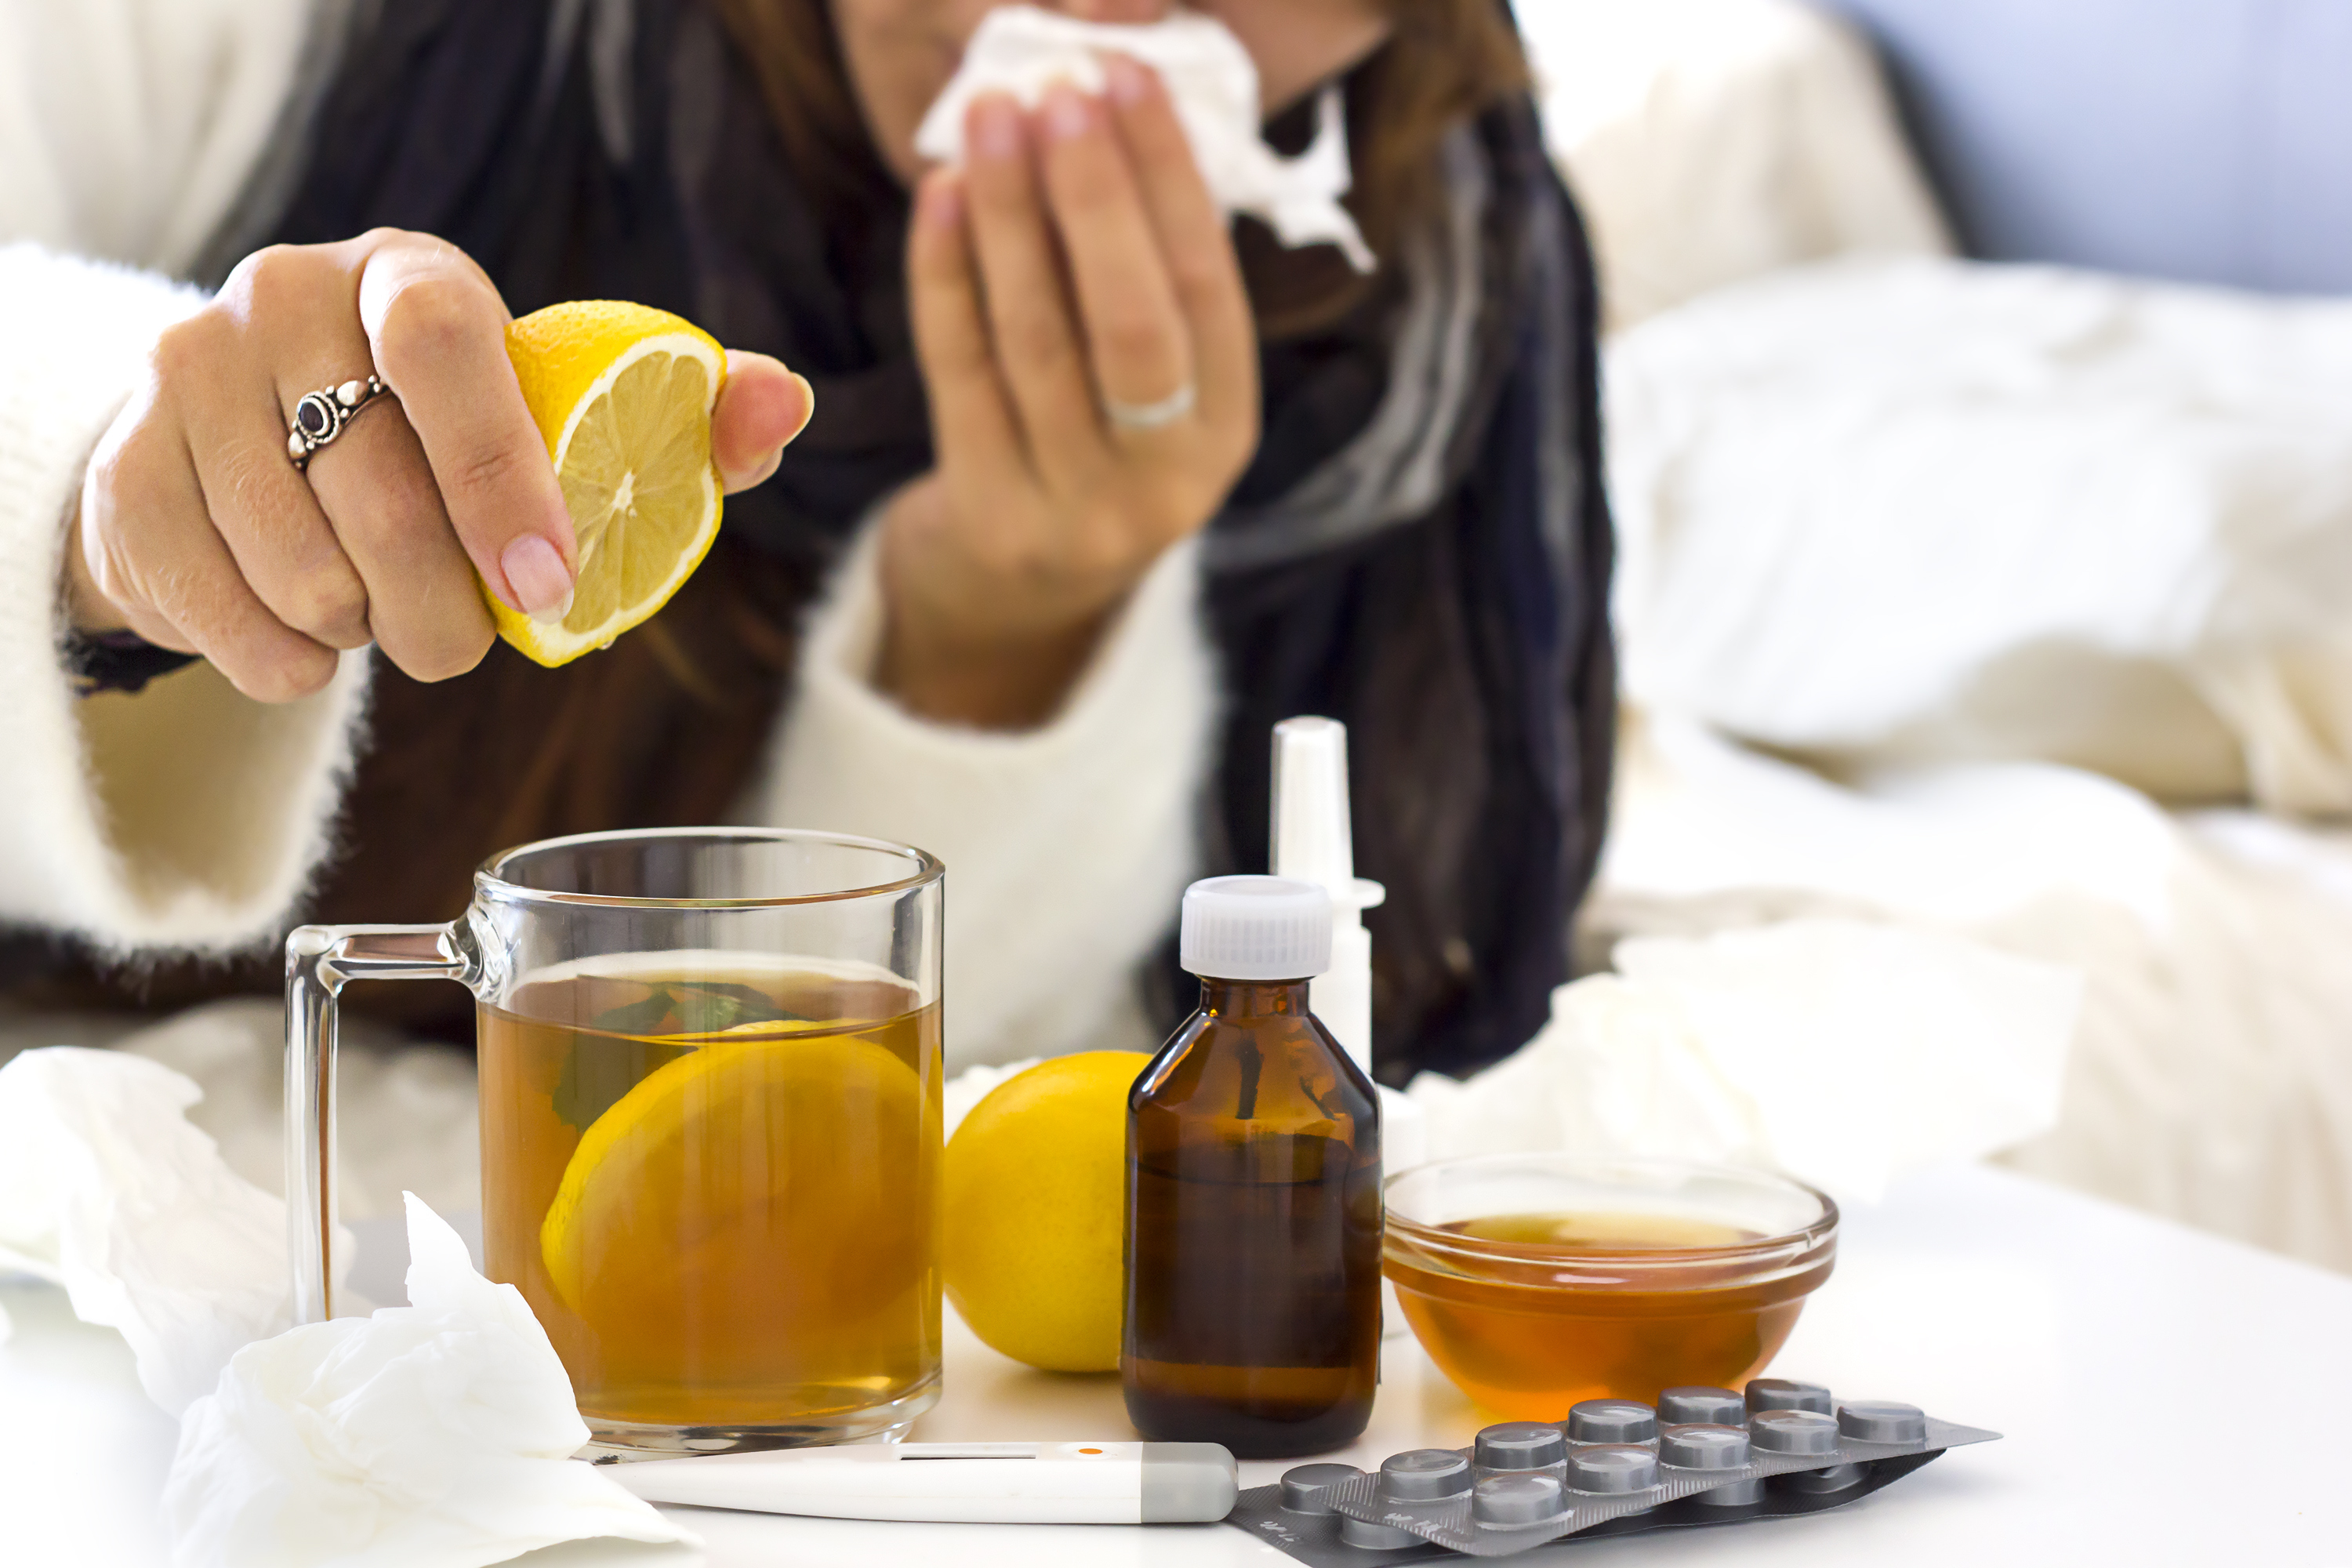 Remede rhume : 10 traitements naturels efficaces contre le rhume